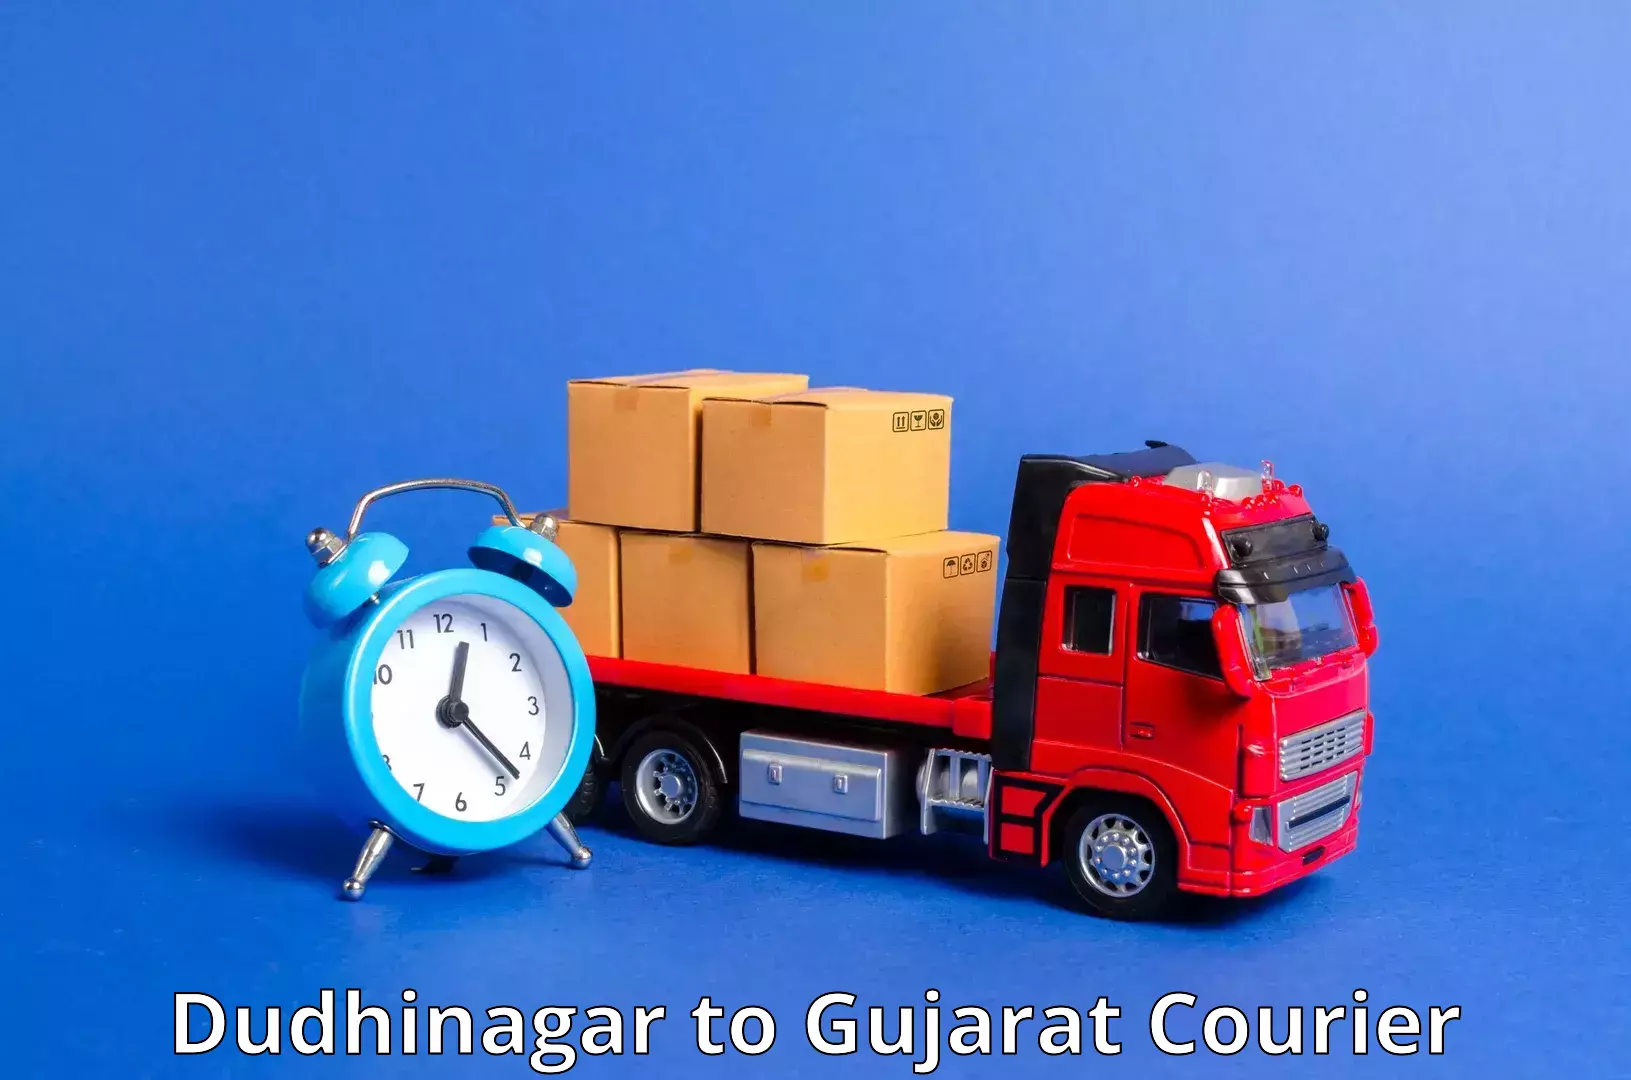 Fast-track shipping solutions Dudhinagar to Dharmaram